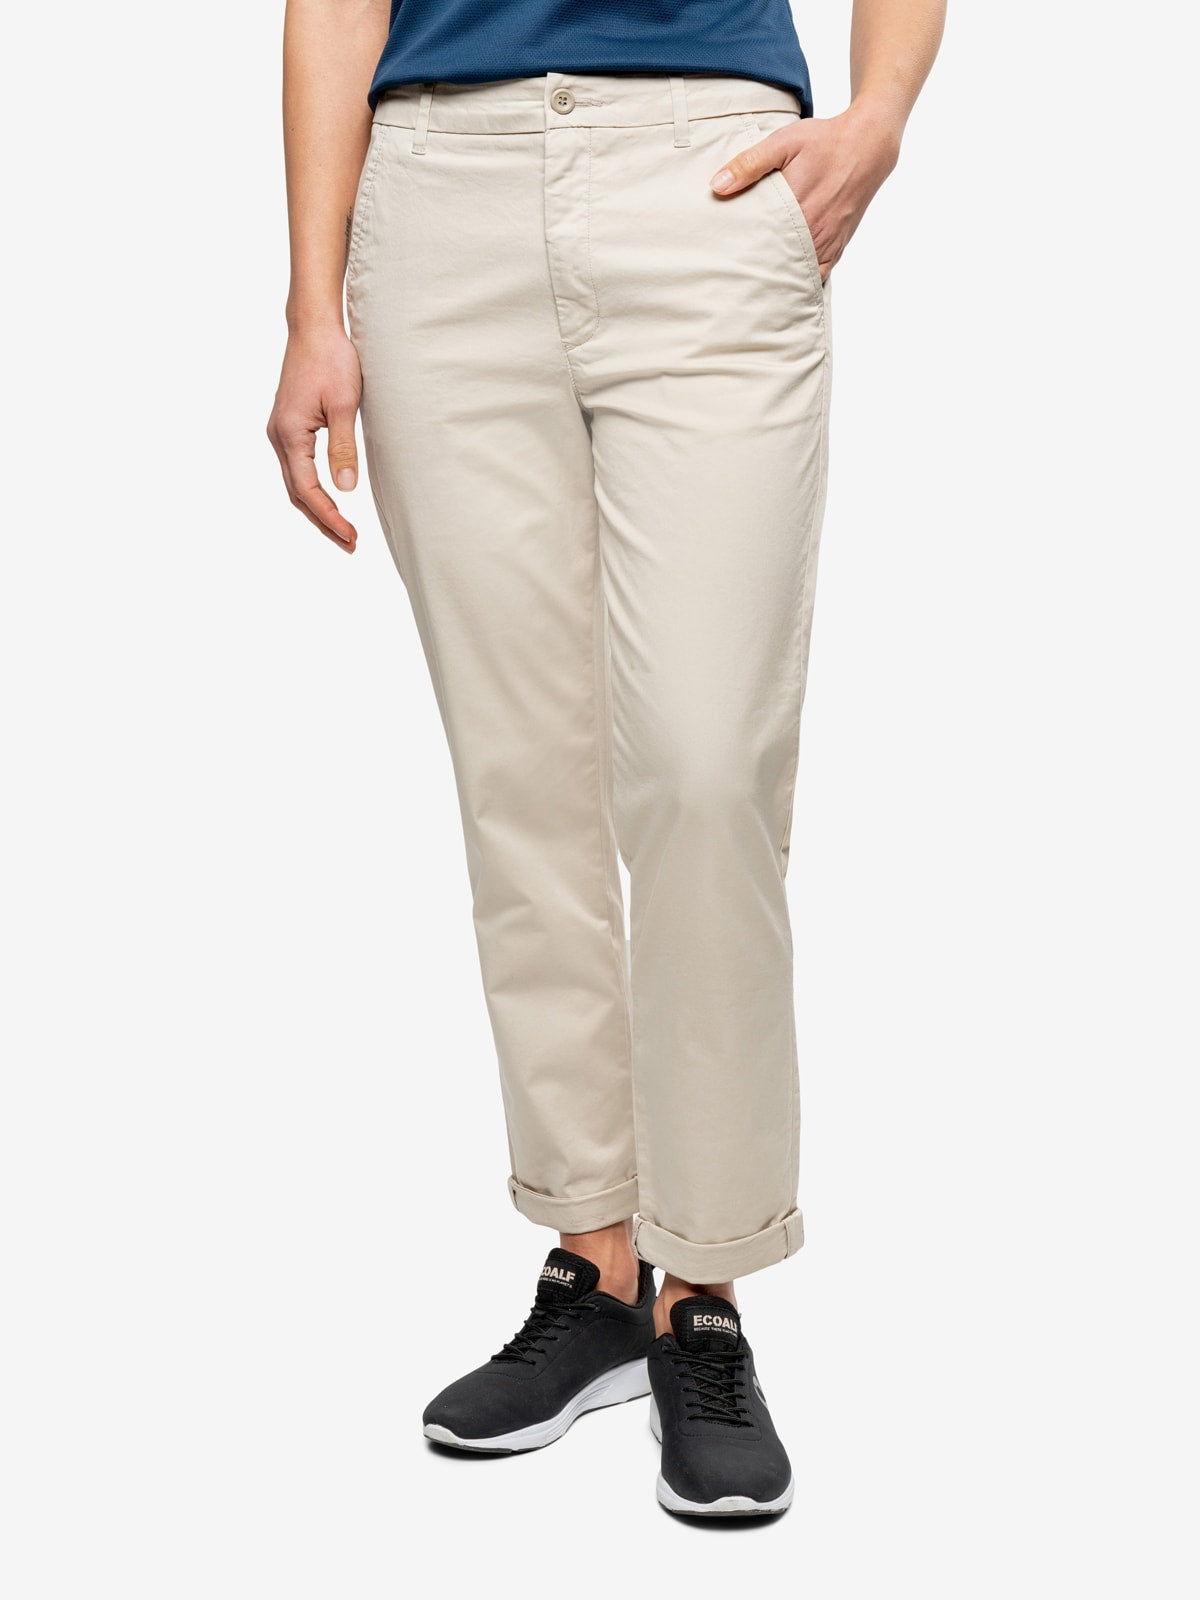 Farah Mens Pleat Front Business Pants Trousers size 92 Colour Olive | eBay